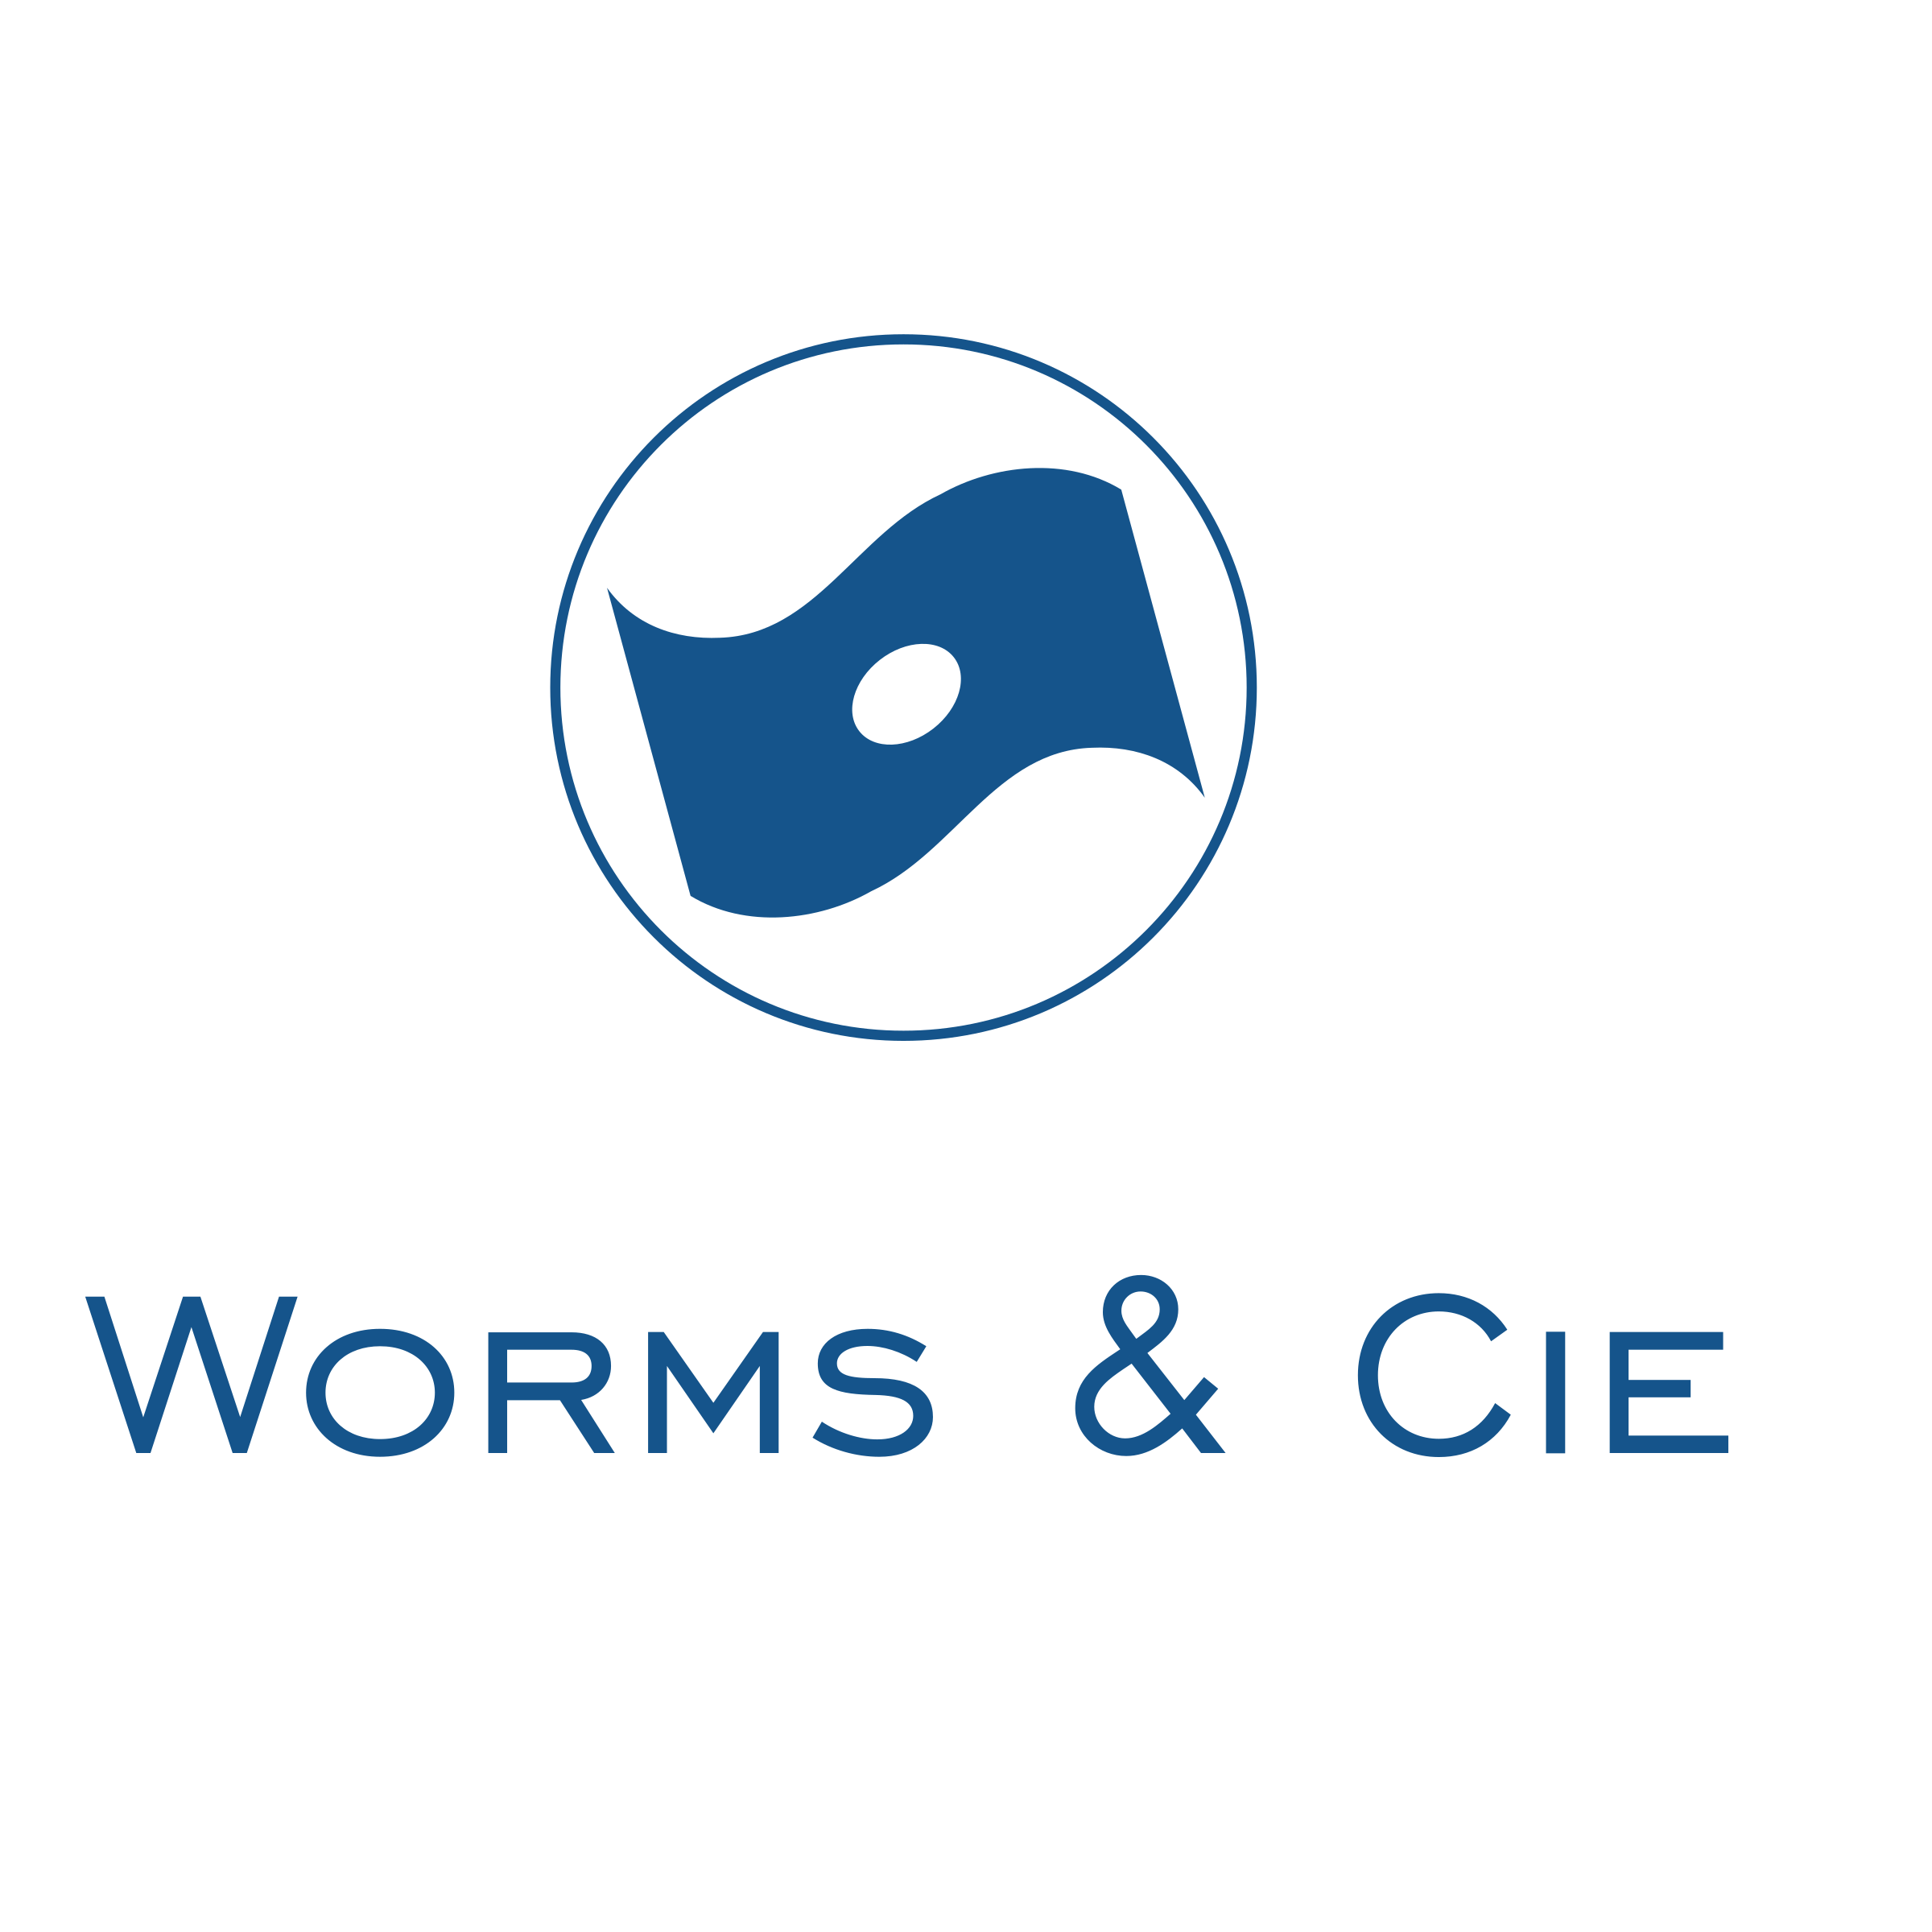 CIE Logo - Worms & Cie Logo PNG Transparent & SVG Vector - Freebie Supply